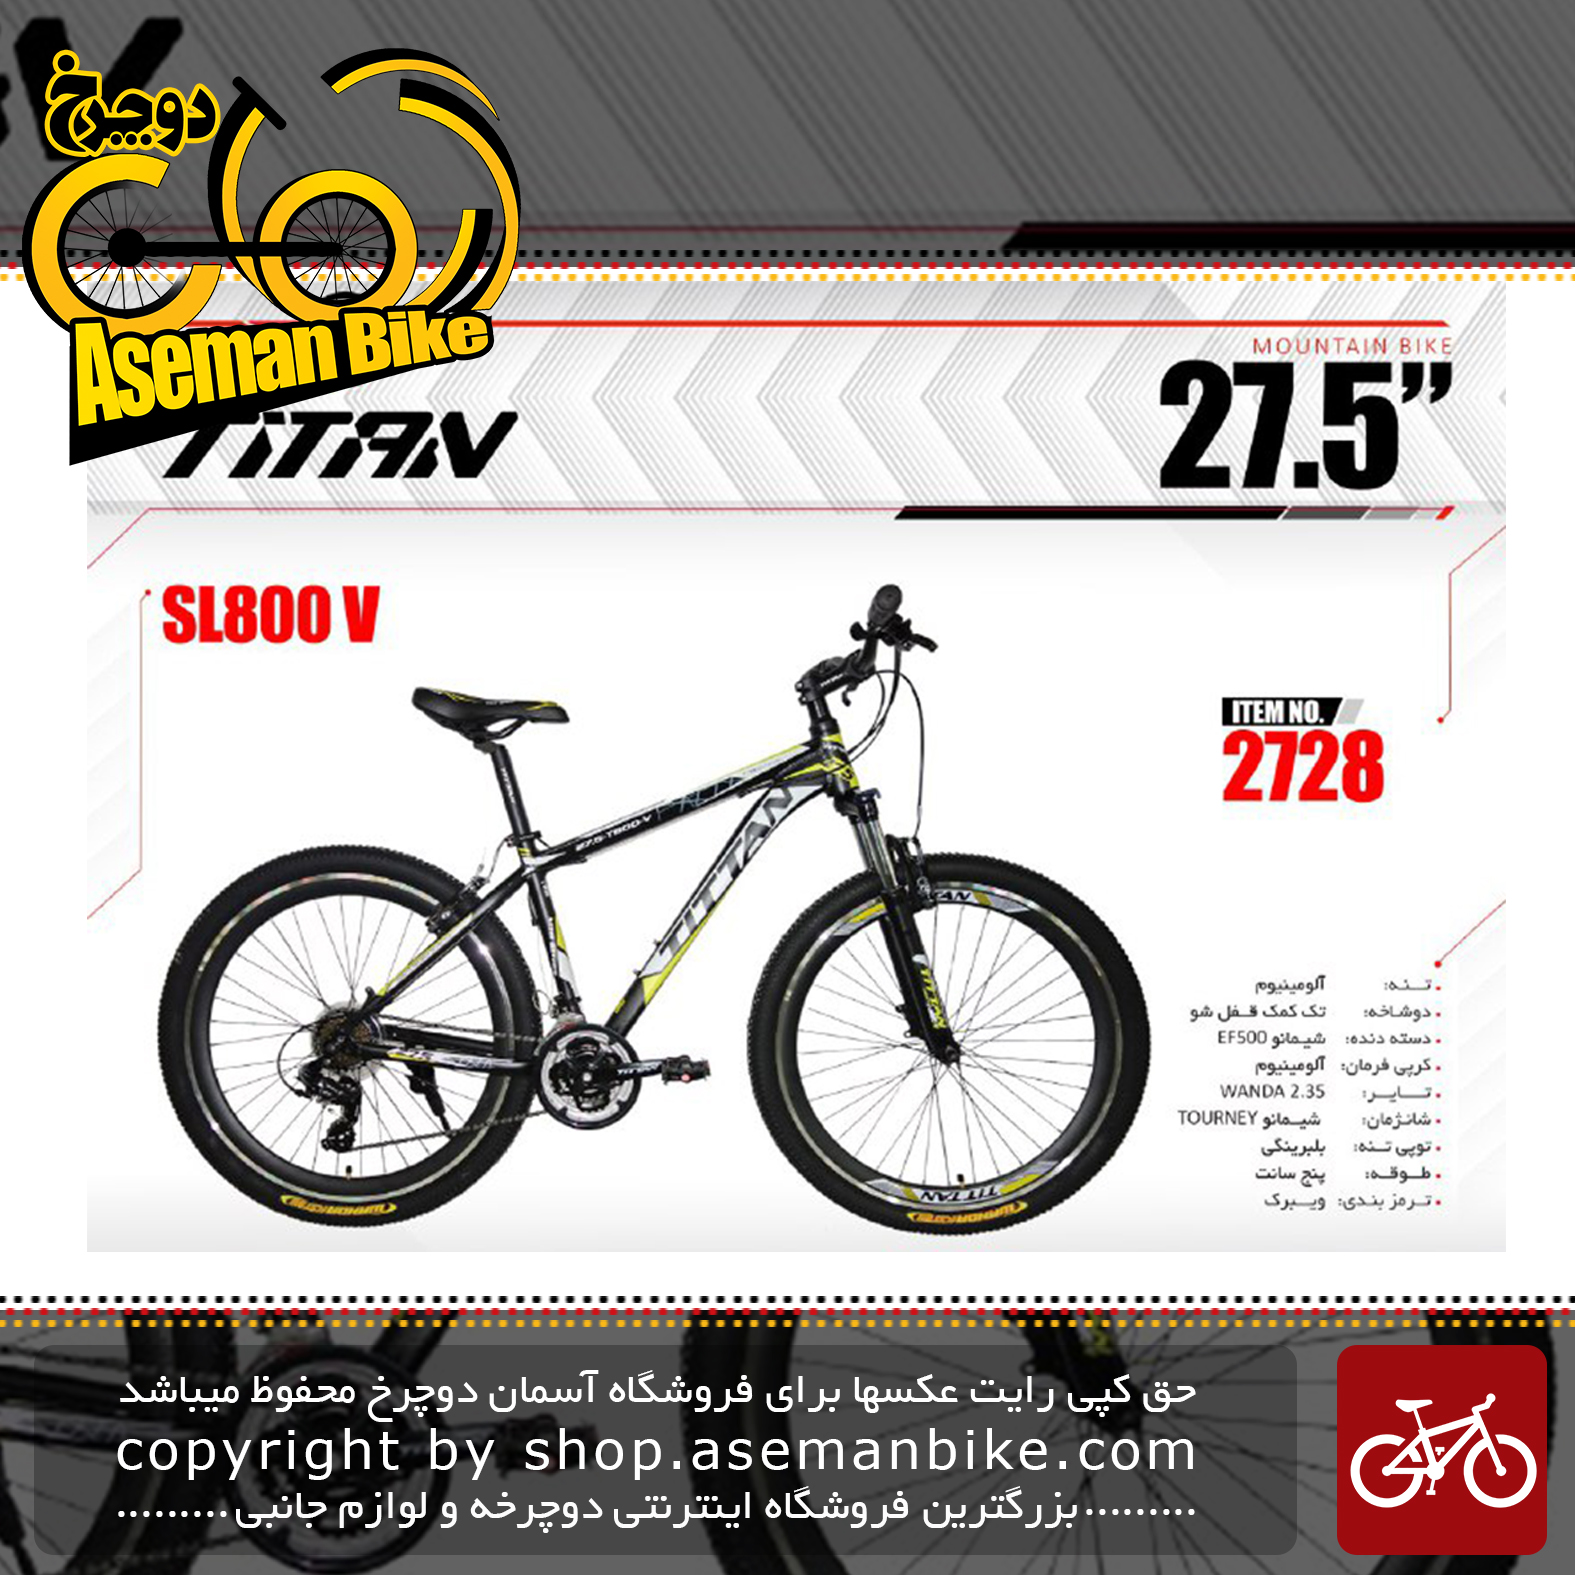 دوچرخه کوهستان و شهری تایتان سایز 27.5 ویبرک مدل اس ال 800 وی TITAN Bicycle Size 27.5 SL800 V